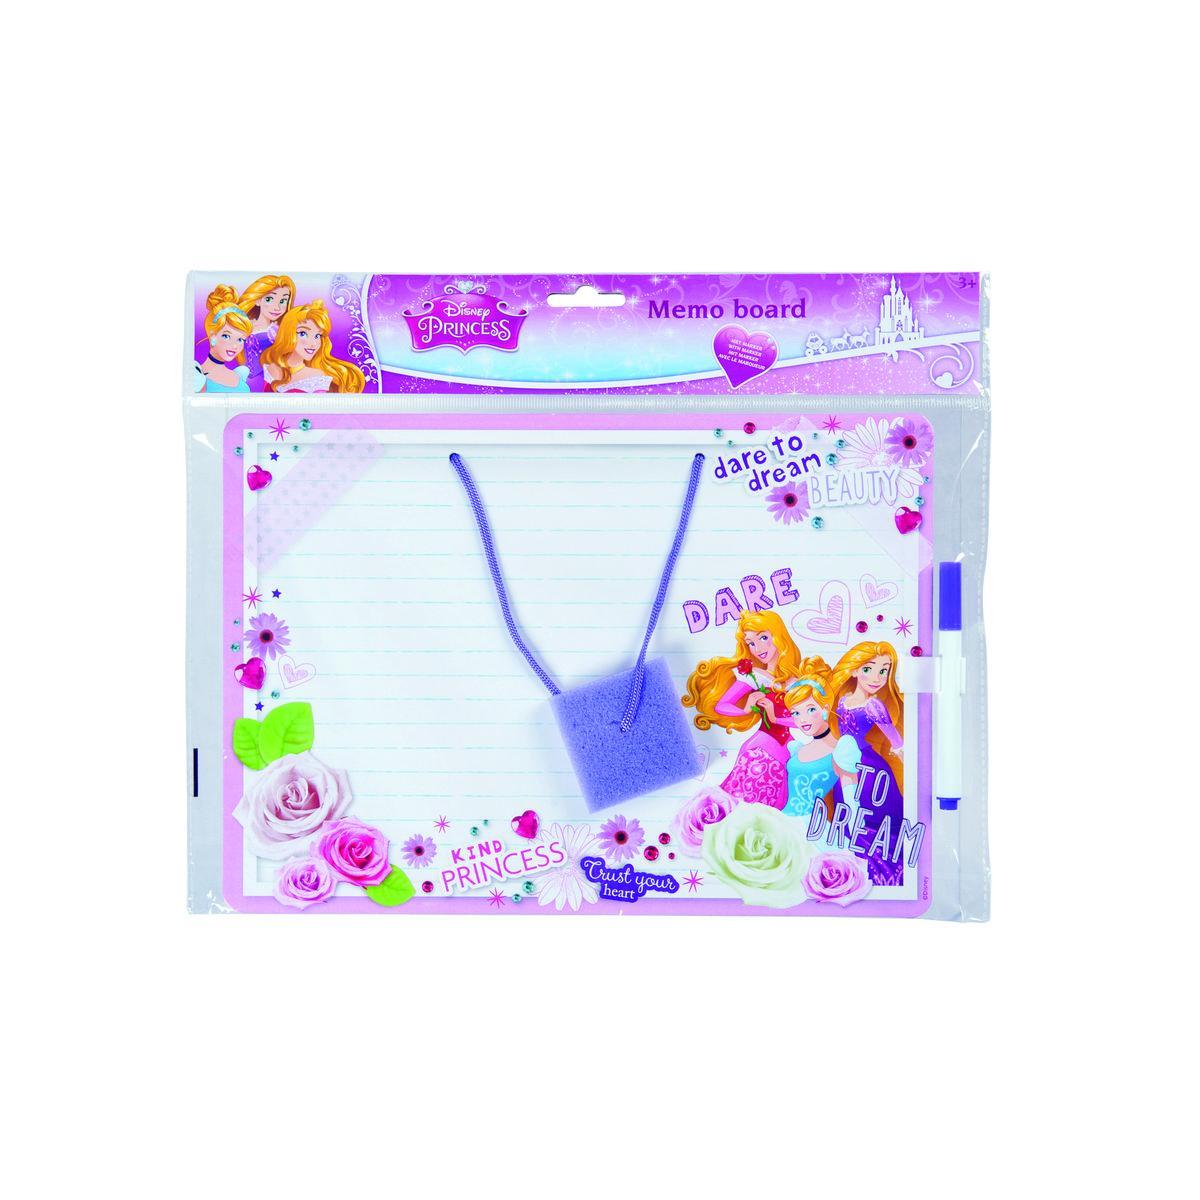 Ardoise Princesse avec feutre - Plastique et carton - 29 x 20,5 cm - Multicolore